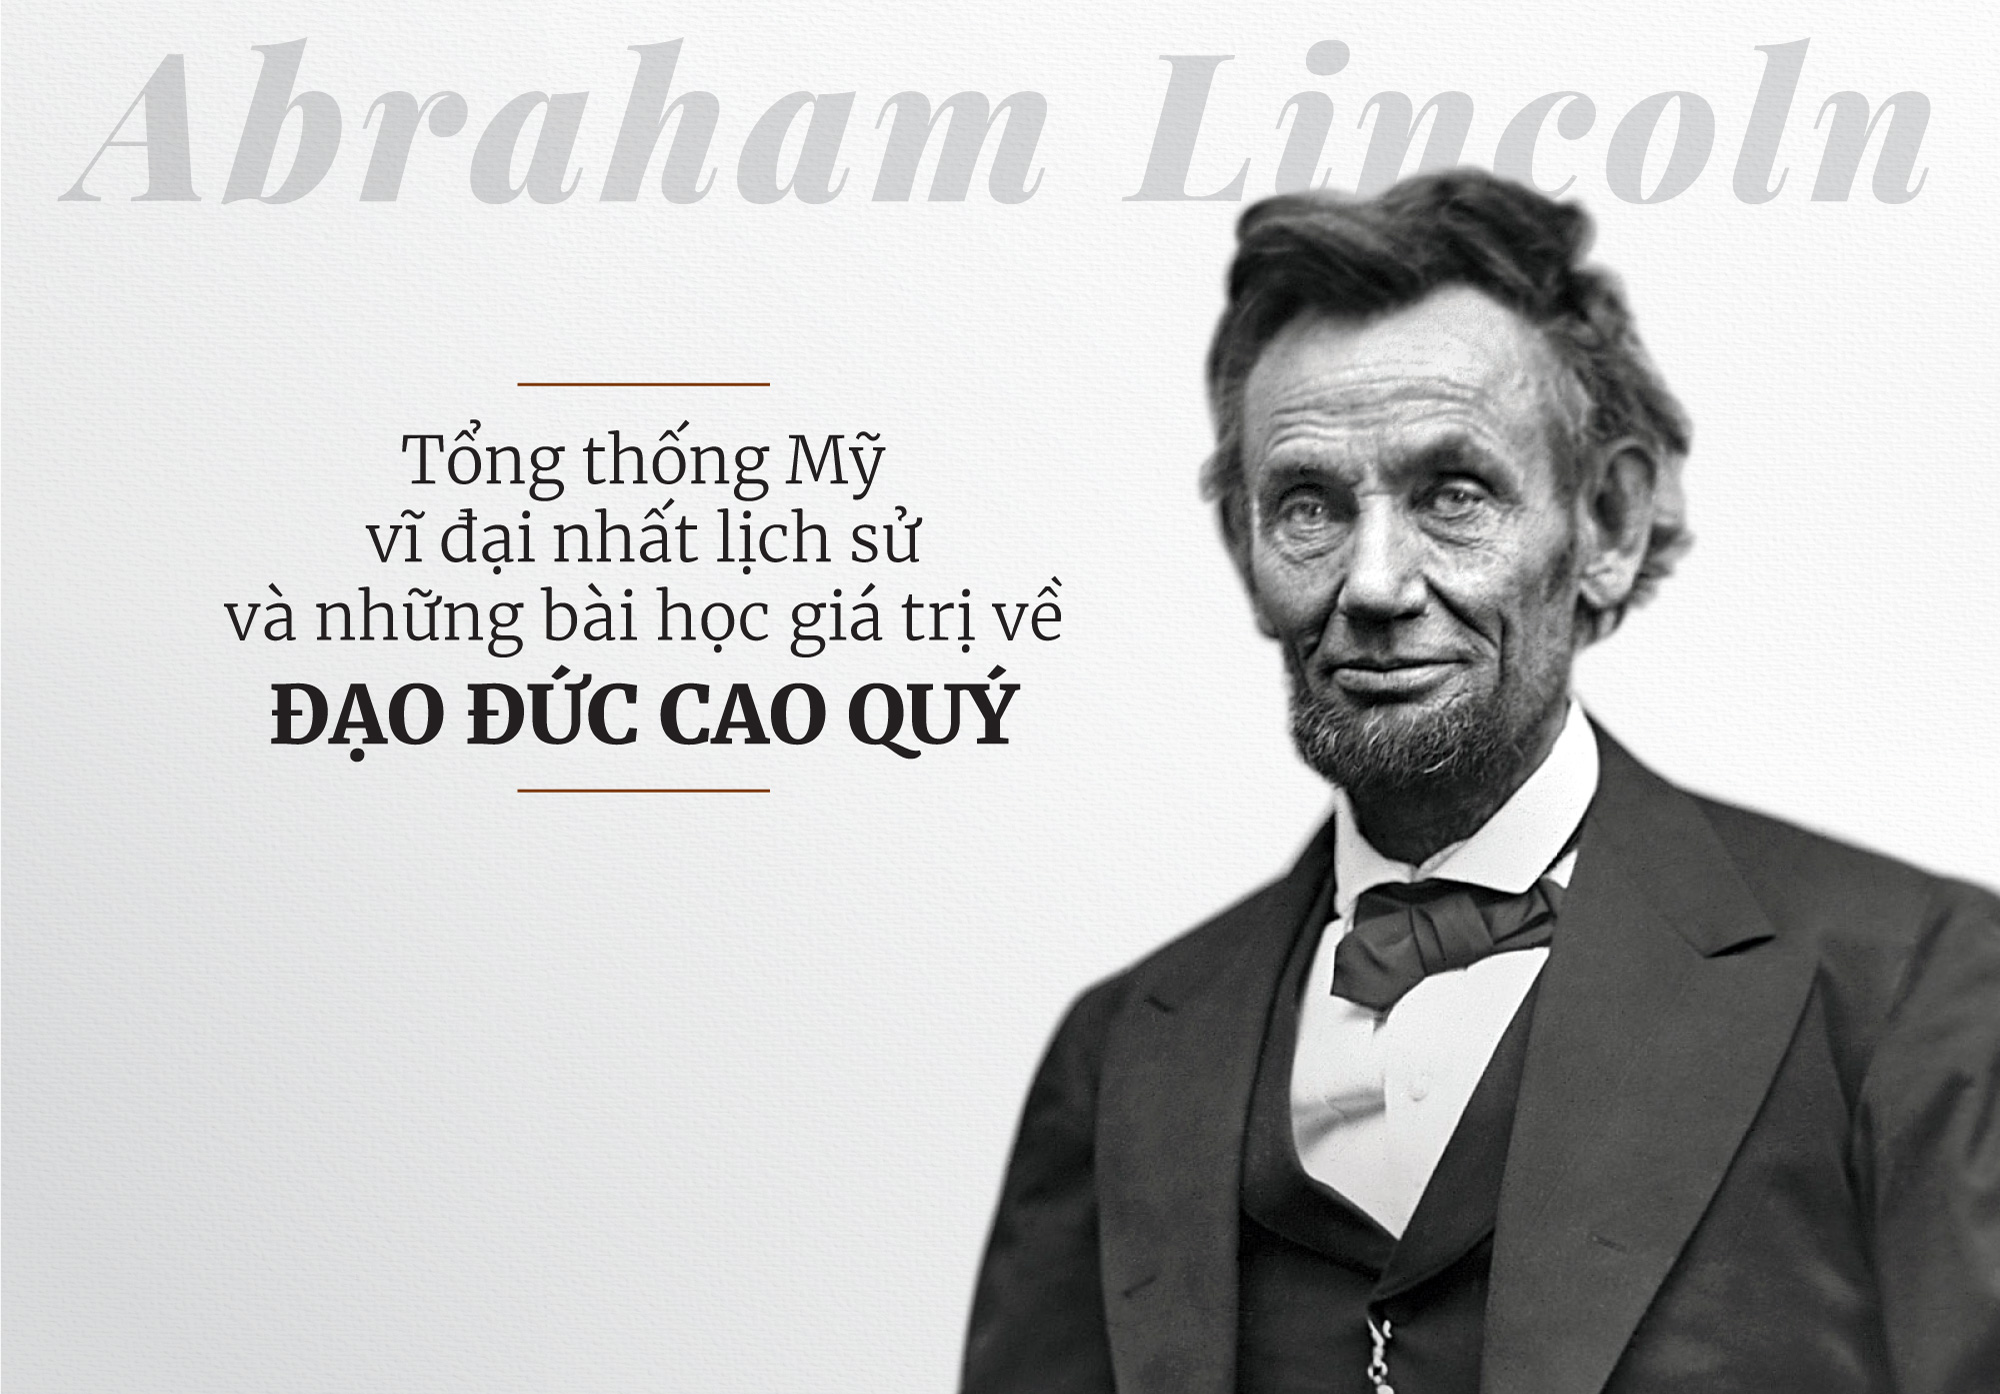 Abraham Lincoln: Tổng Thống Hoa Kỳ vĩ đại nhất lịch sử và những bài học giá trị về Đạo Đức Cao Quý.